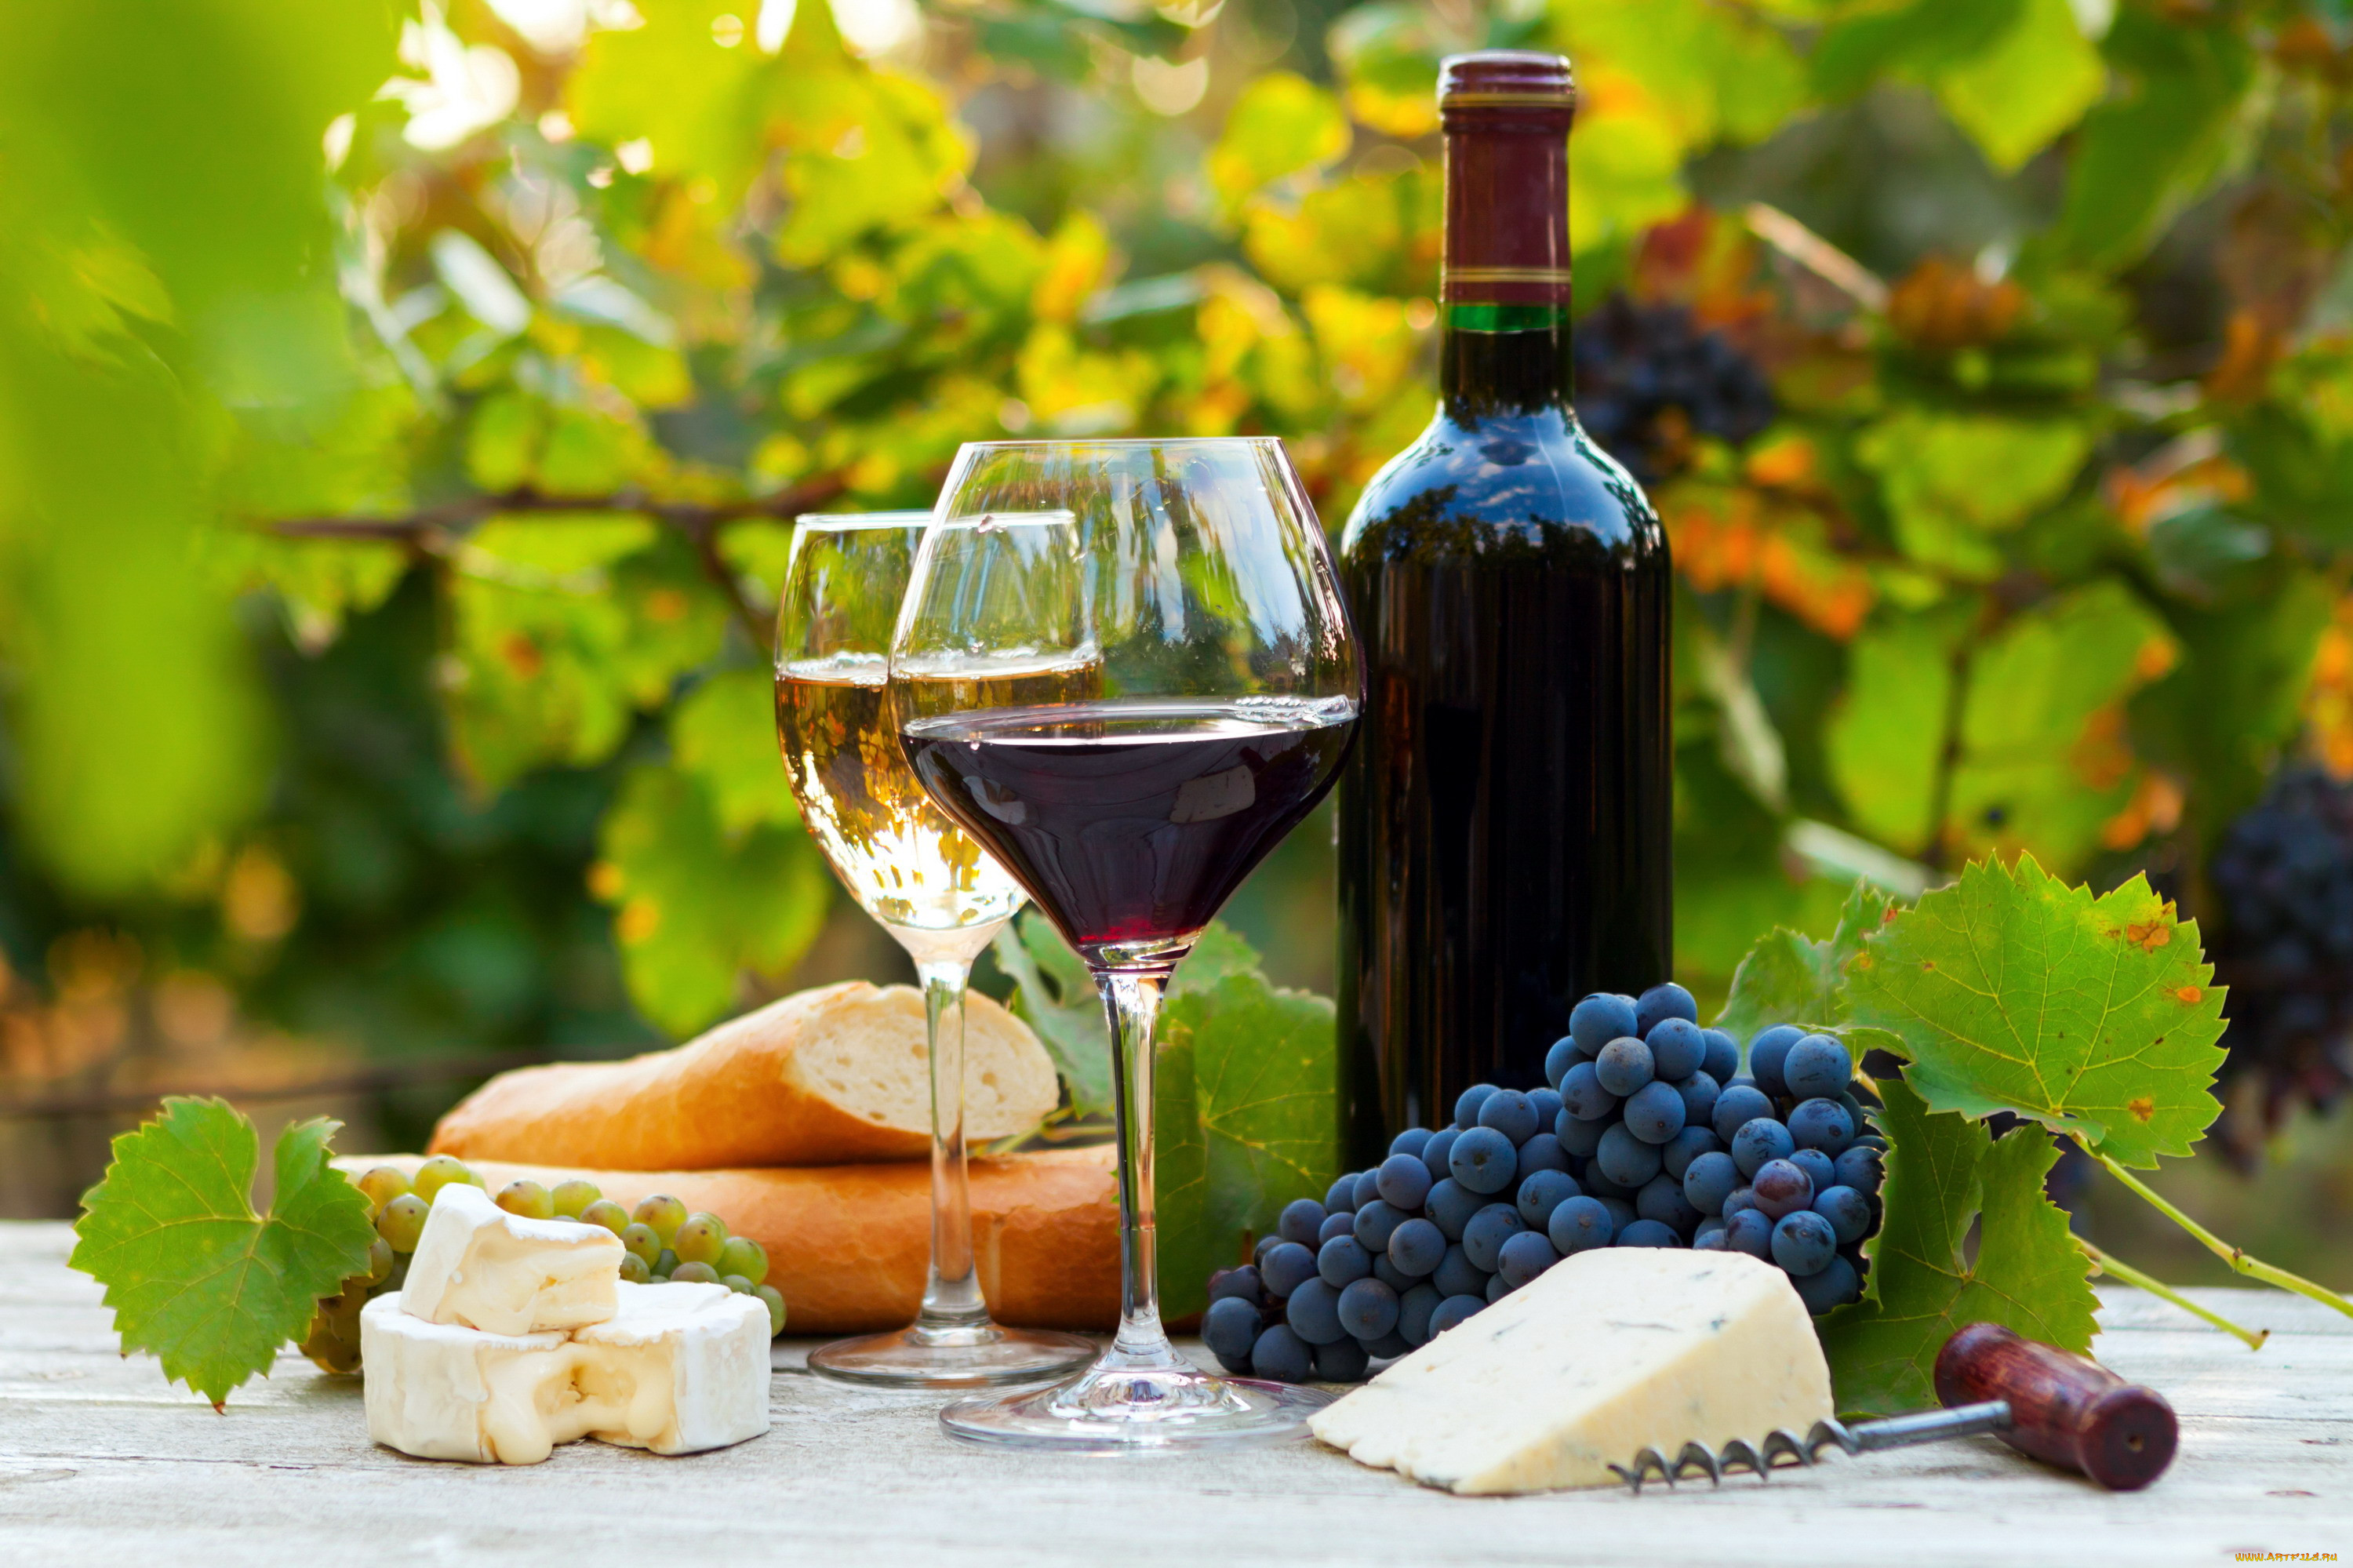 Виноградное вино с травами. Шато Пино виноградники. Шато Пино винодельня. Вино и сыр. Виноградники вино.